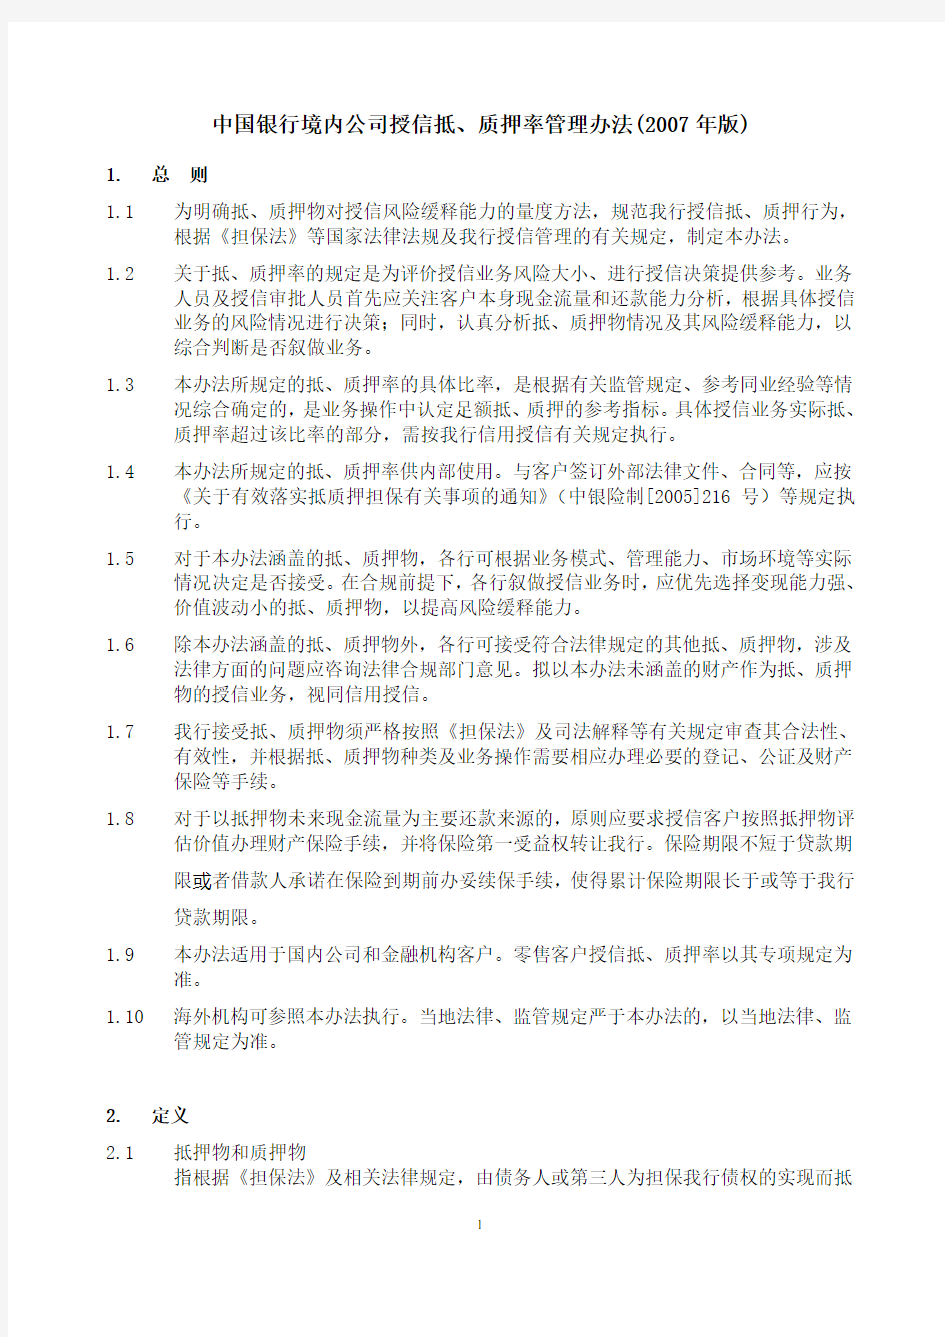 中国银行境内公司授信抵、质押率管理办法(2007年版)